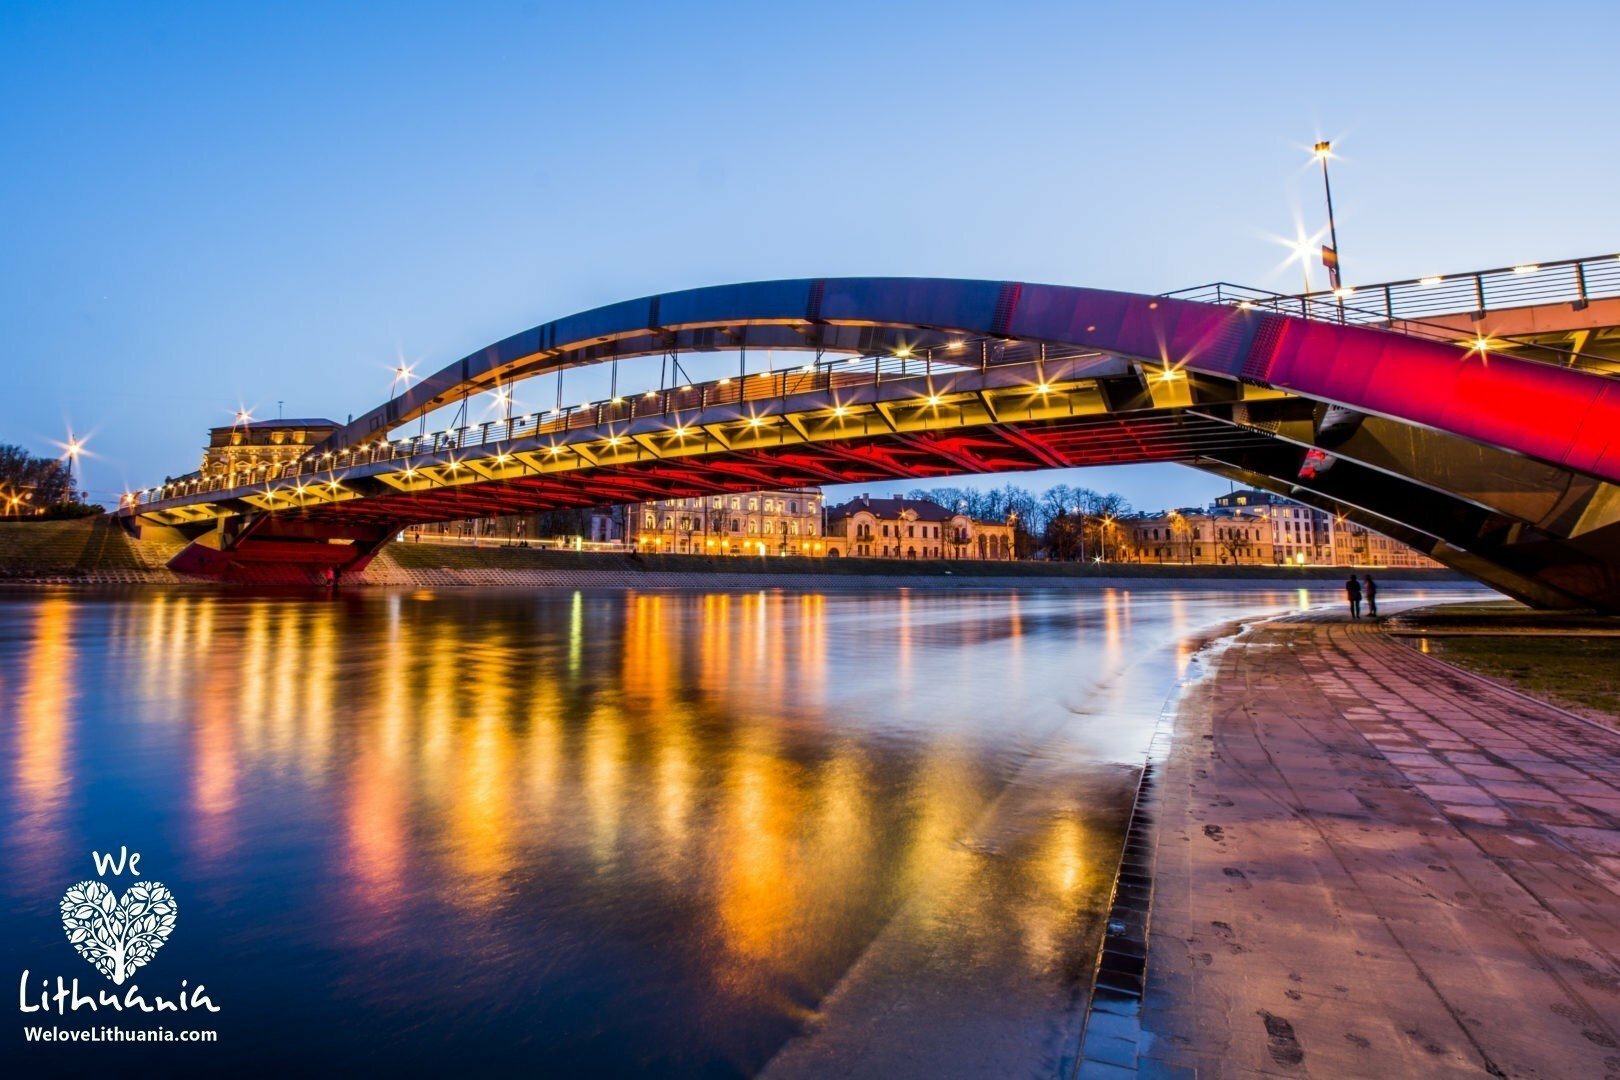 Karaliaus Mindaugo tiltas – nutiestas Vilniuje, per Neries upę, jungia Žirmūnų seniūniją su Vilniaus senamiesčiu. Tiltas pastatytas 2003 m., karaliaus Mindaugo karūnavimo 750 metų jubiliejaus proga. Tilto ilgis – 101 m, plotis – 19,7 m. Trys eismo juostos.